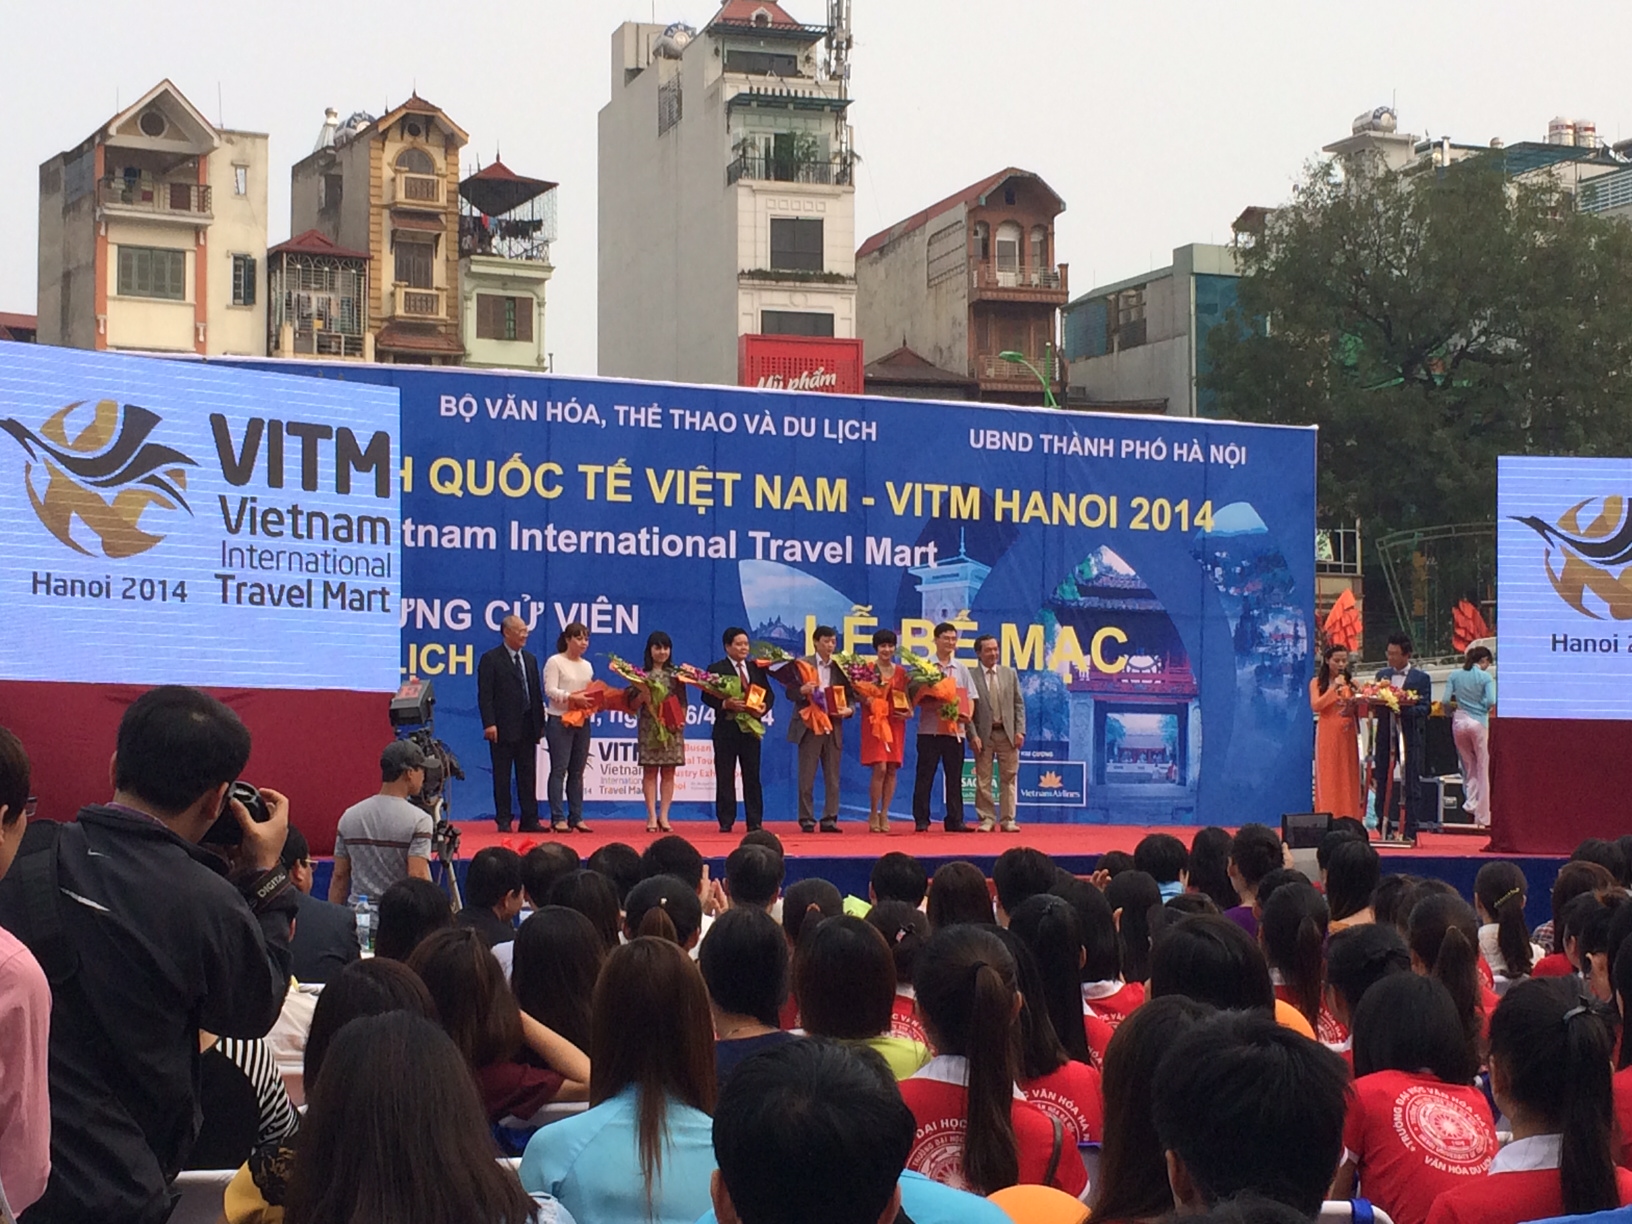 Hanoi Redtours là đơn vị bán tour kích cầu nhiều nhất tại Hội chợ VITM 2014